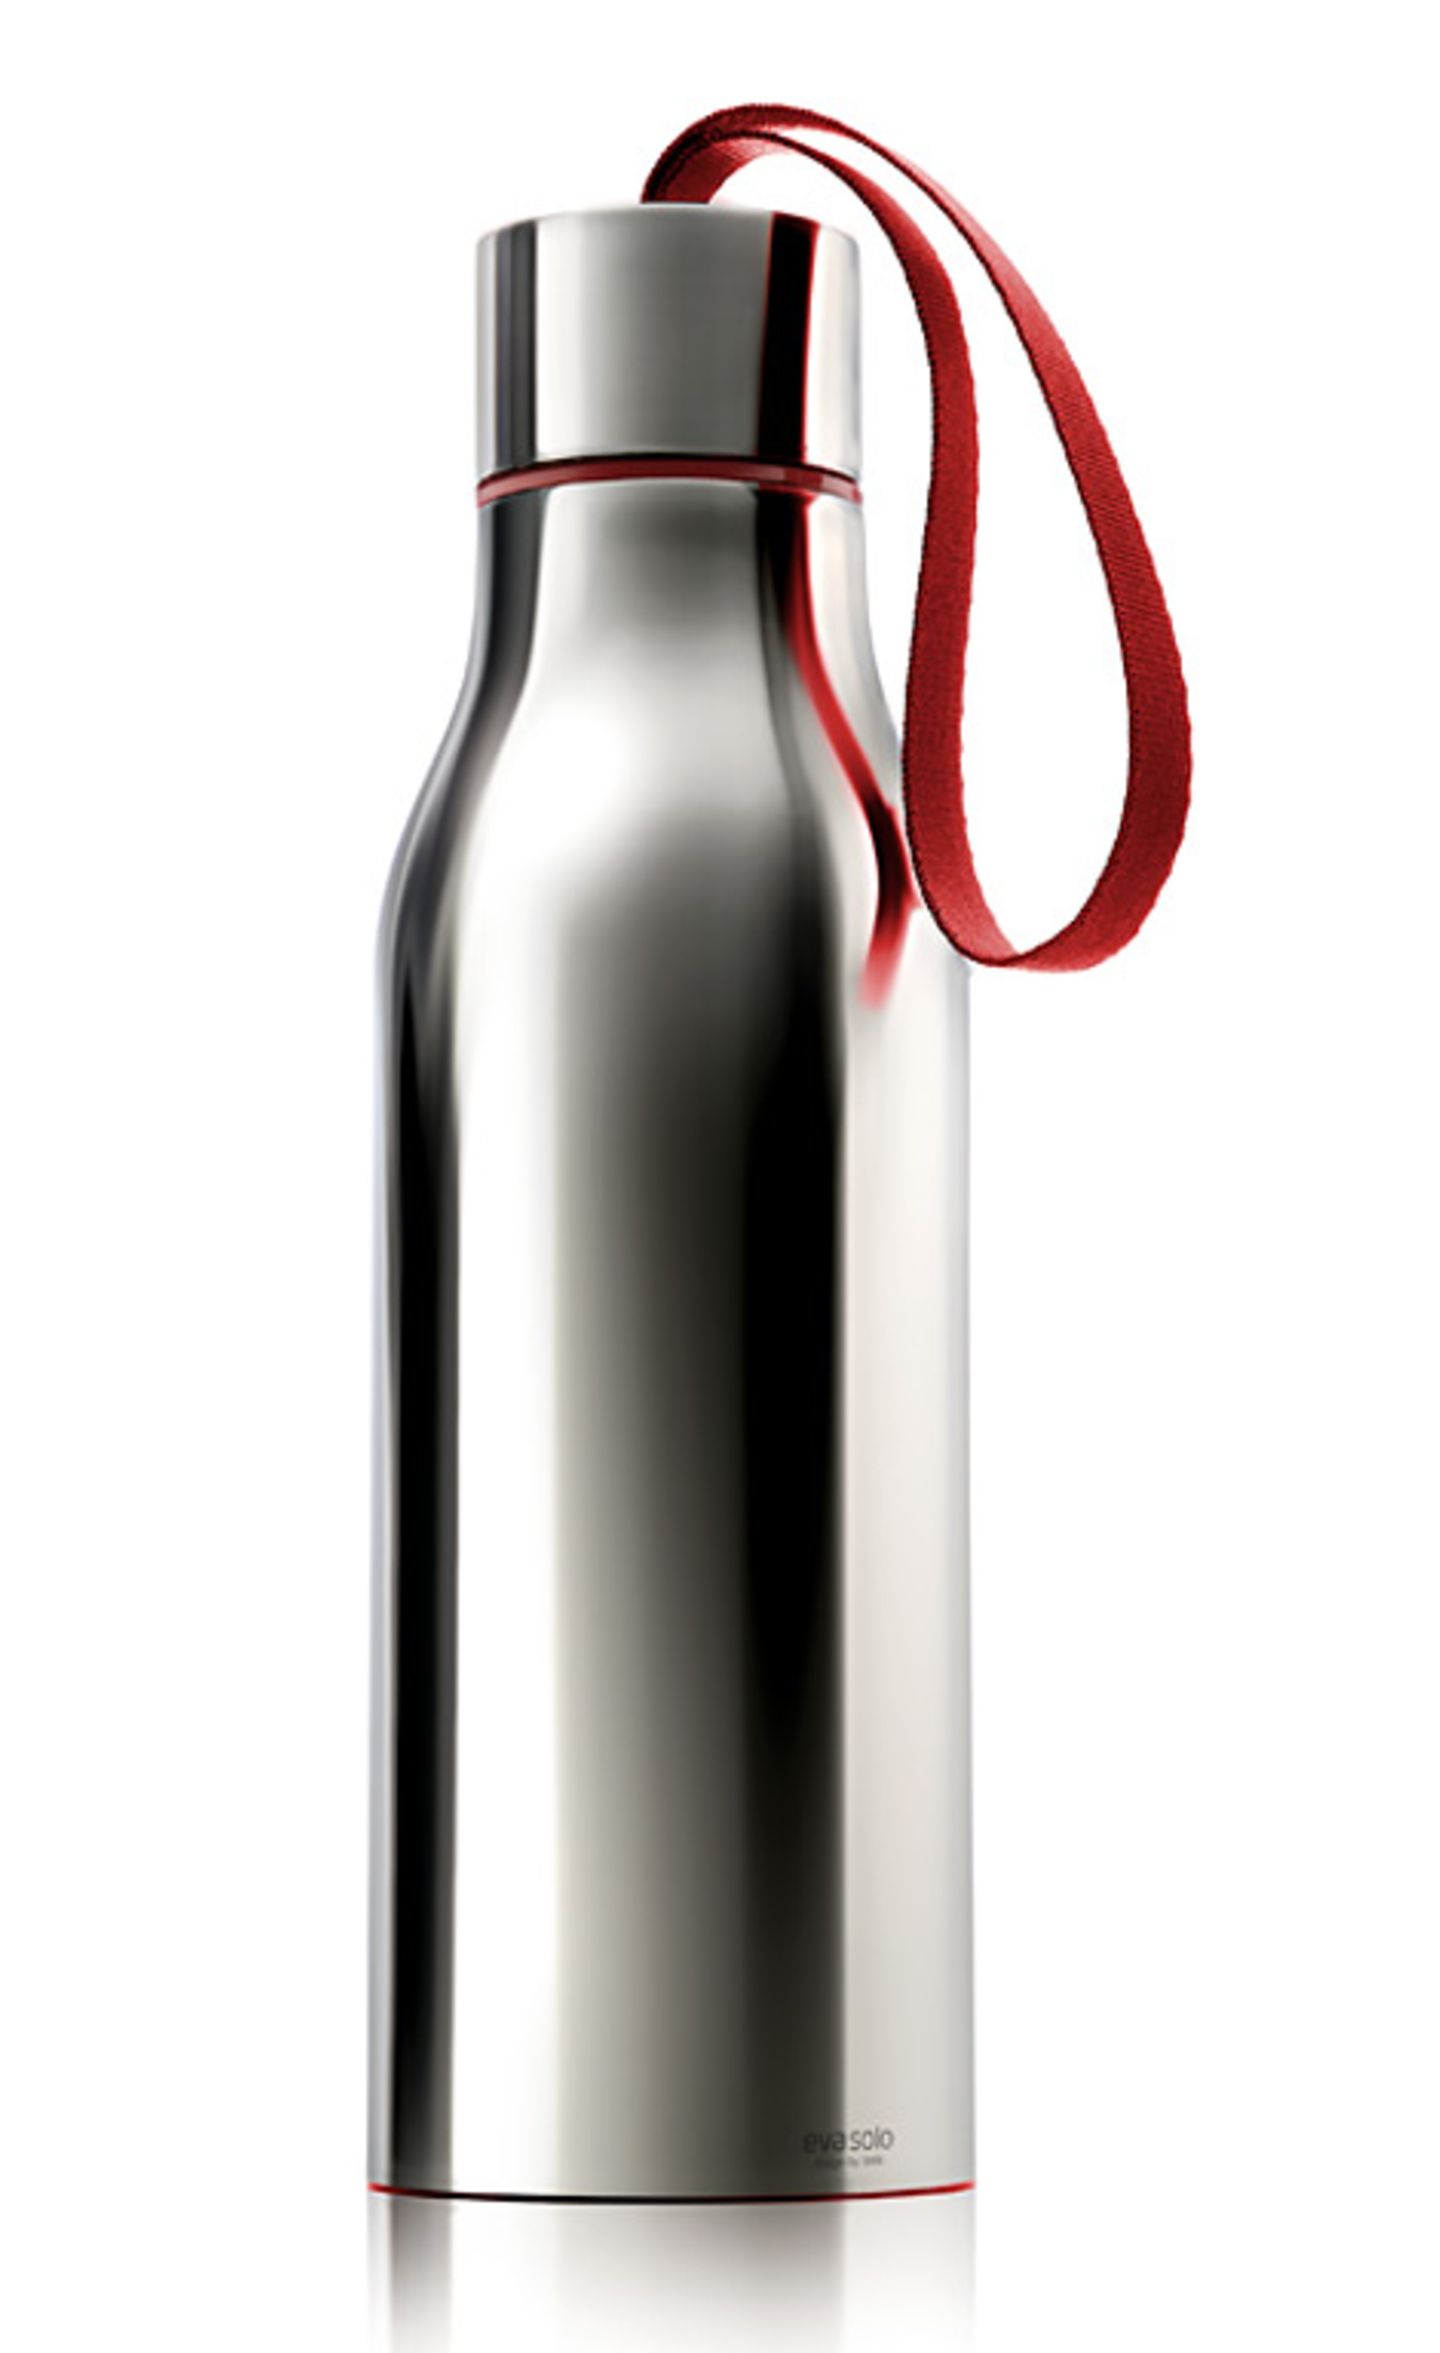 Trinkflasche von Eva Solo hält Getränke kühl - Bild 6 - [SCHÖNER